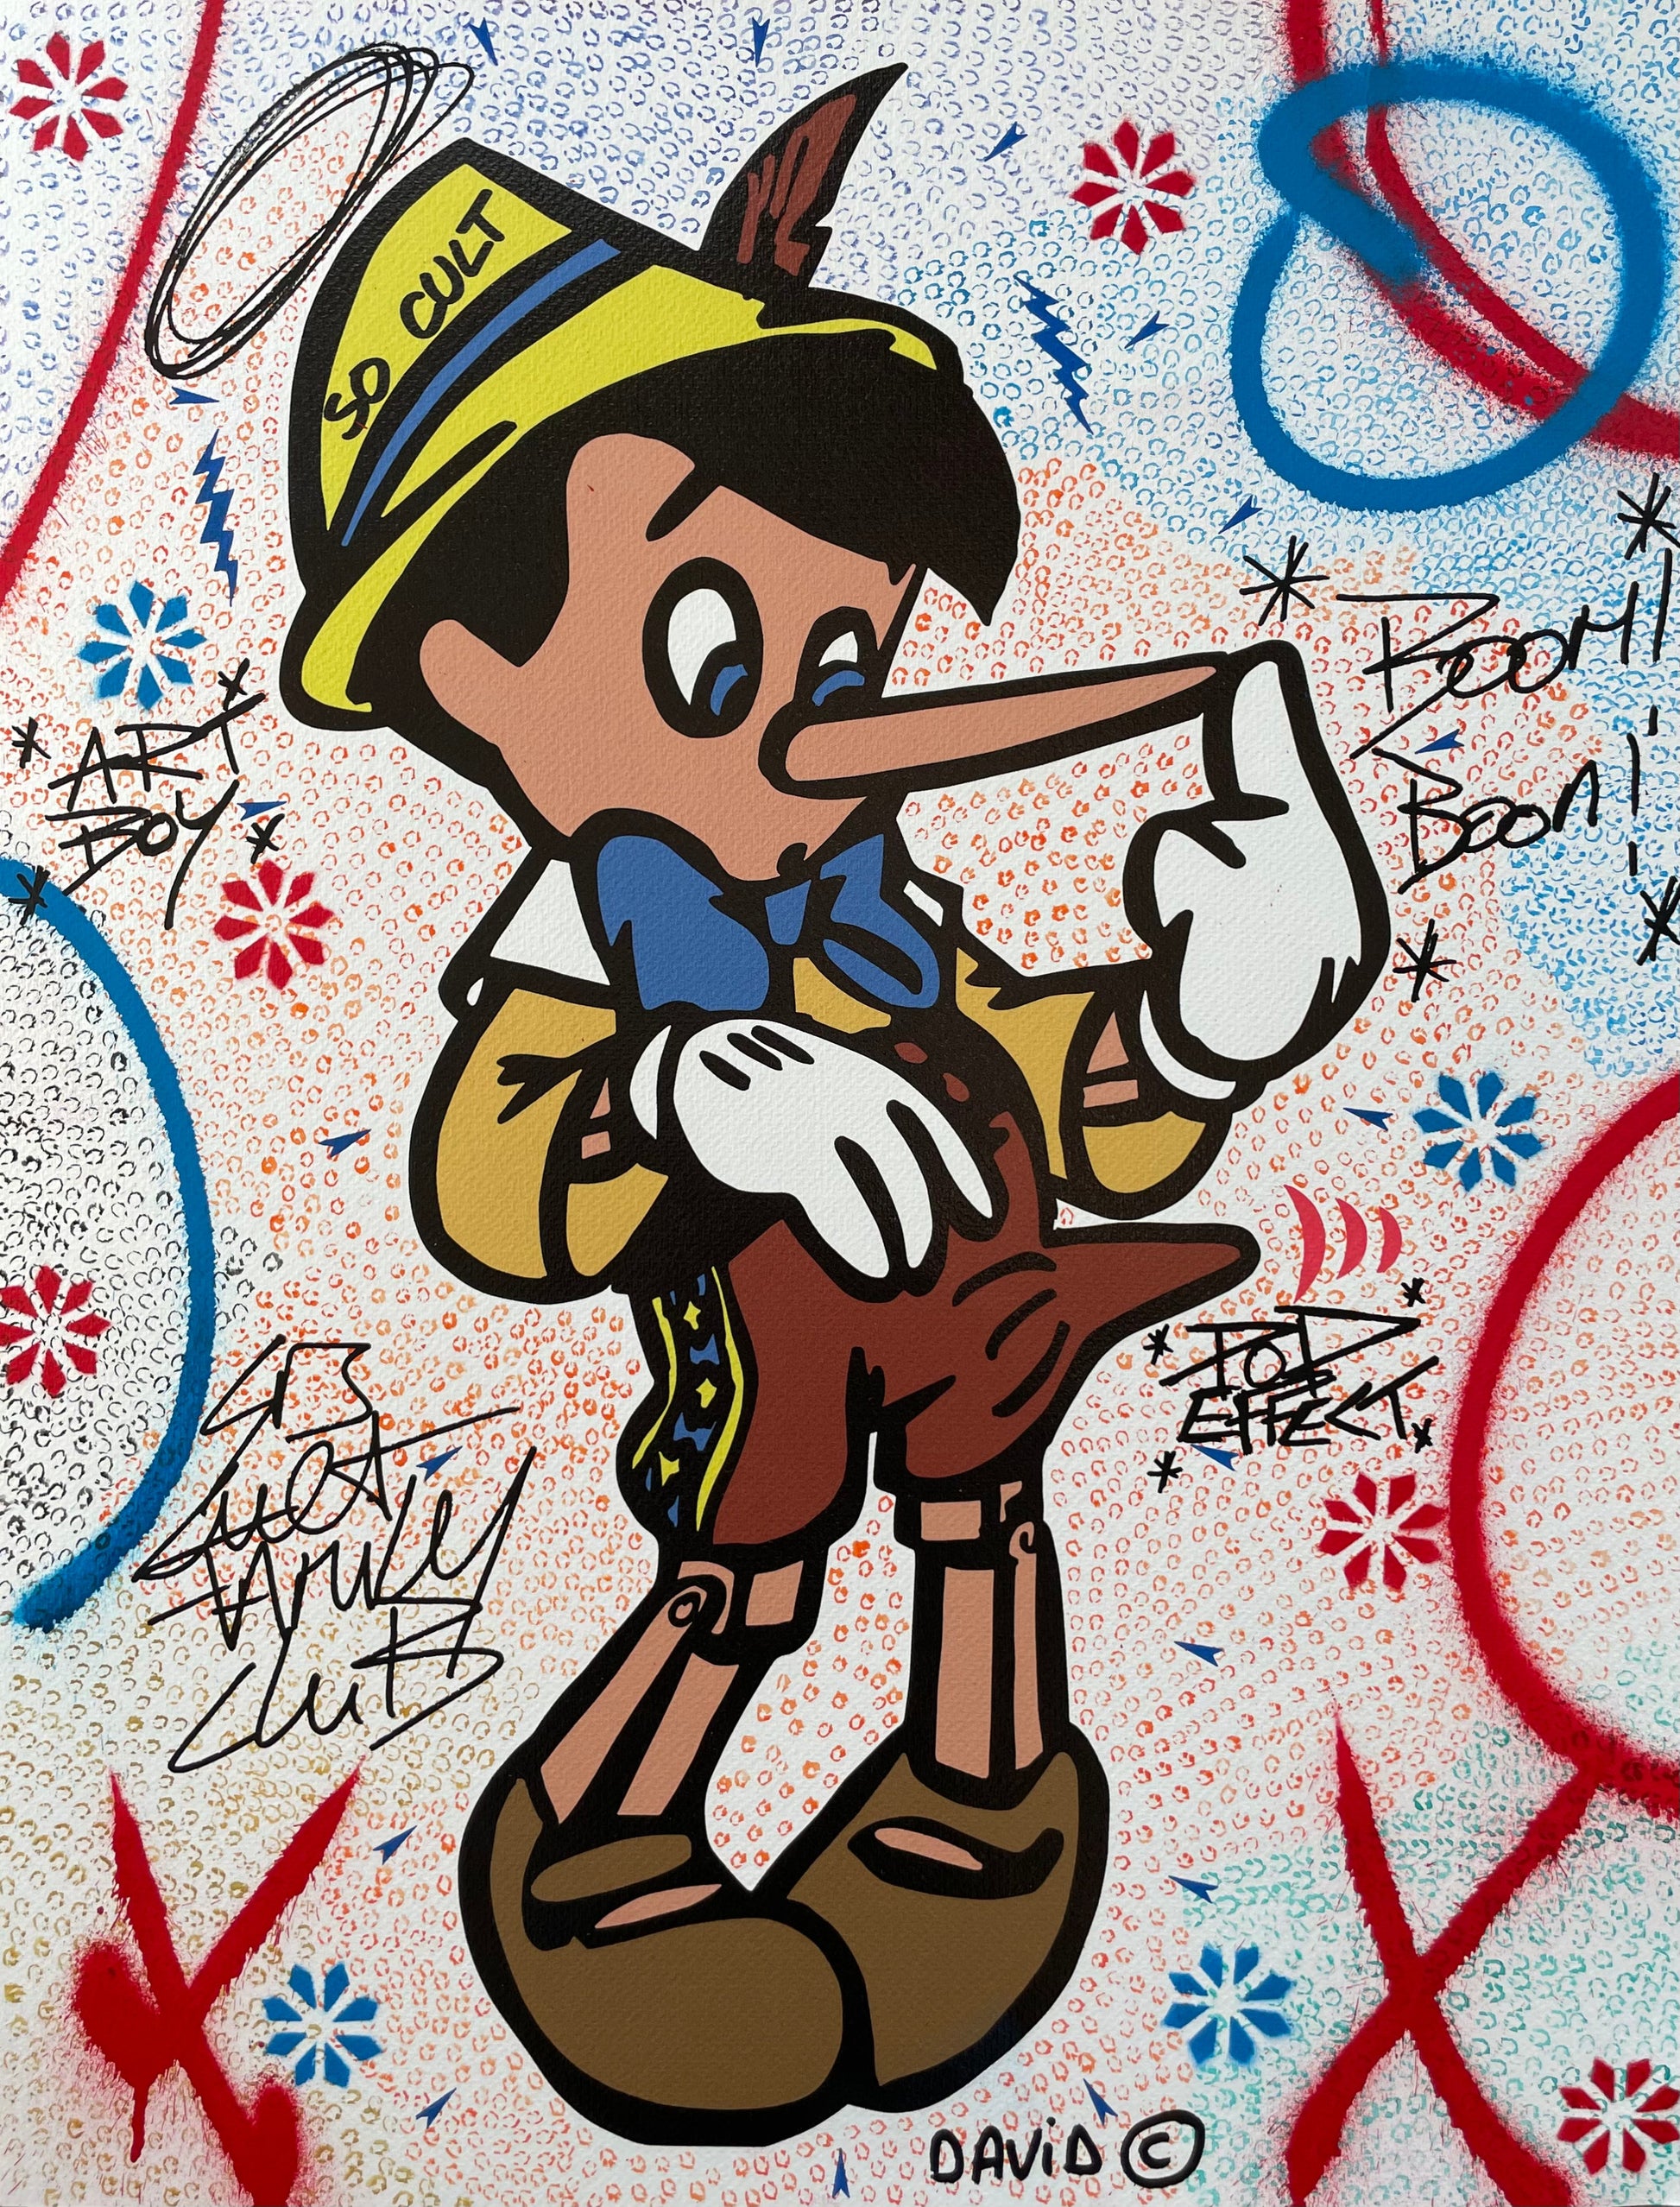 Pinocchio Art Boy di David Karsenty. Stampa giclée tecnica mista su carta rappresentante l'iconico personaggio Disney raffigurato in maniera divertente dall'artista | Cd Studio d'Arte